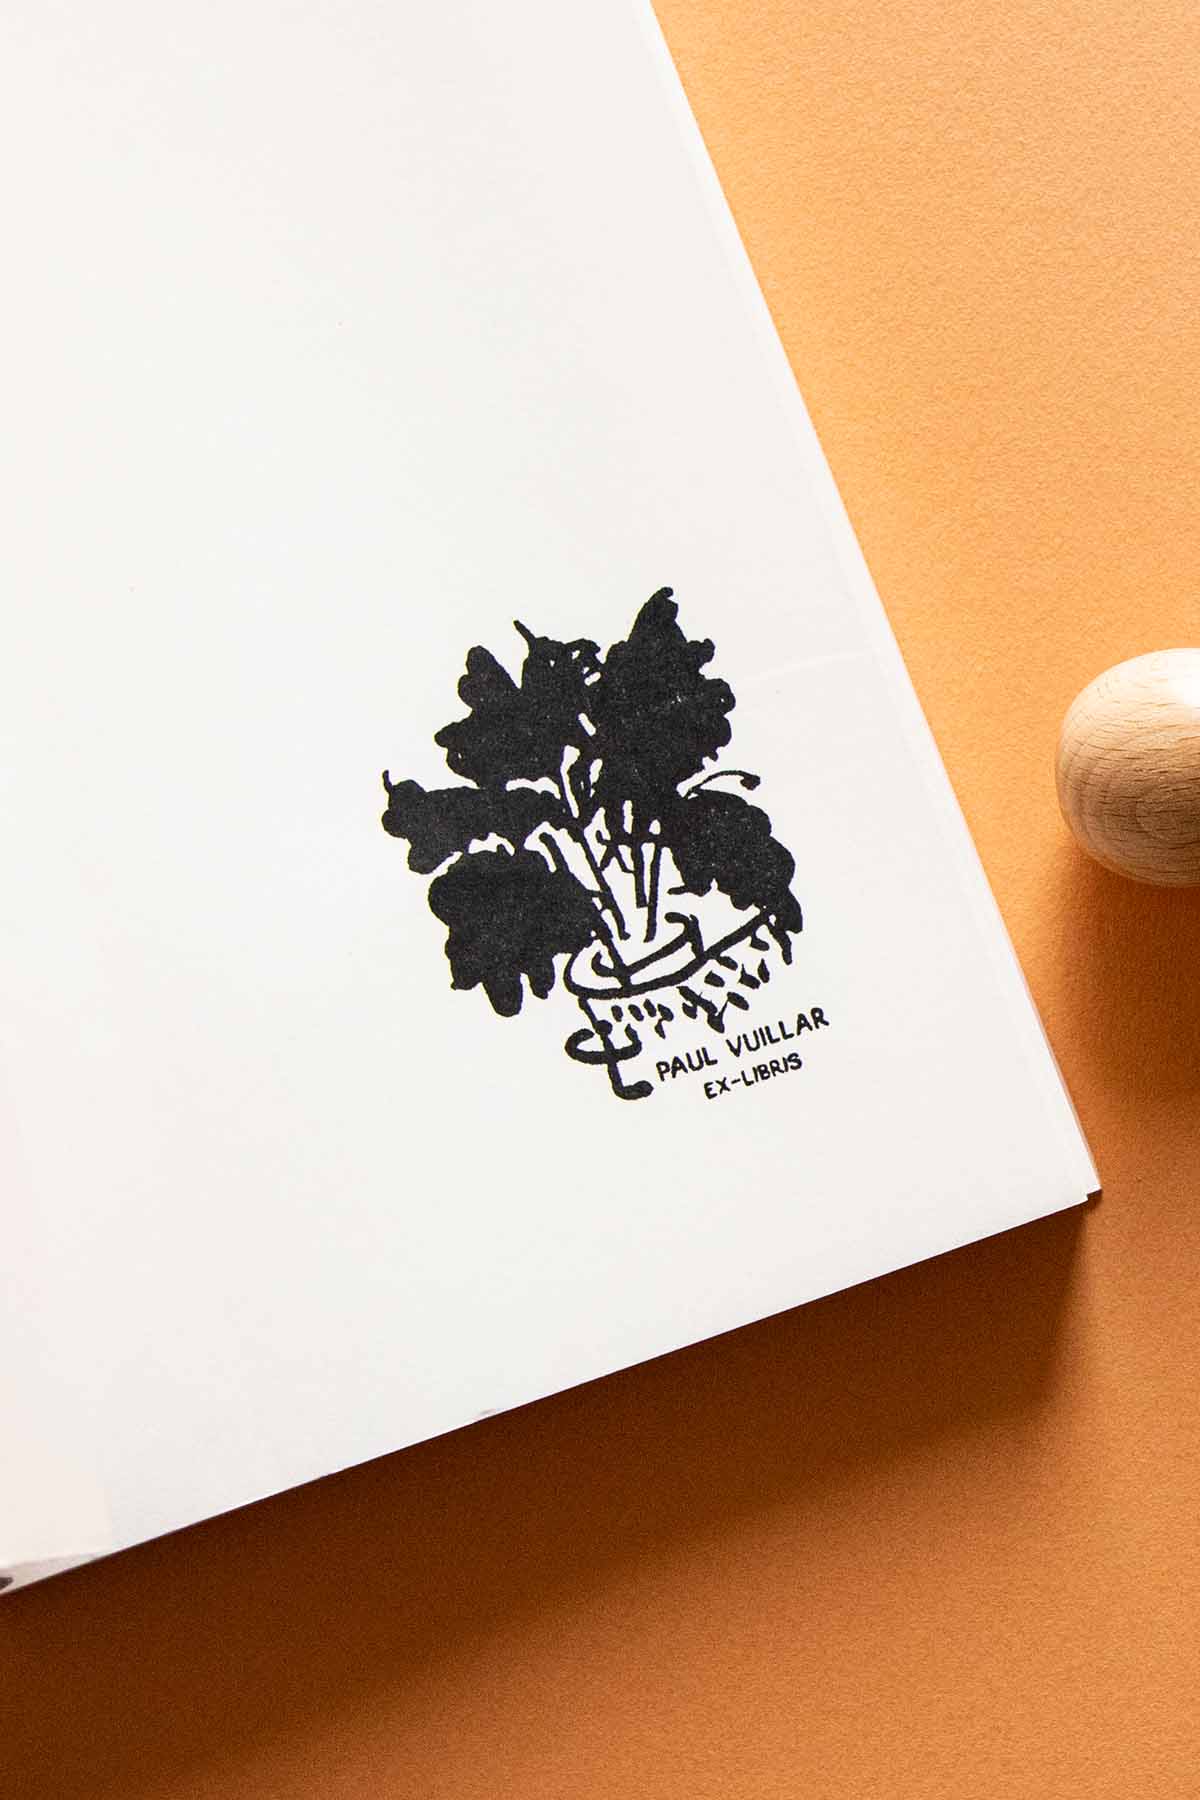 Portadilla de libro estampada con sello exlibris de una planta en una maceta con hojas anchas